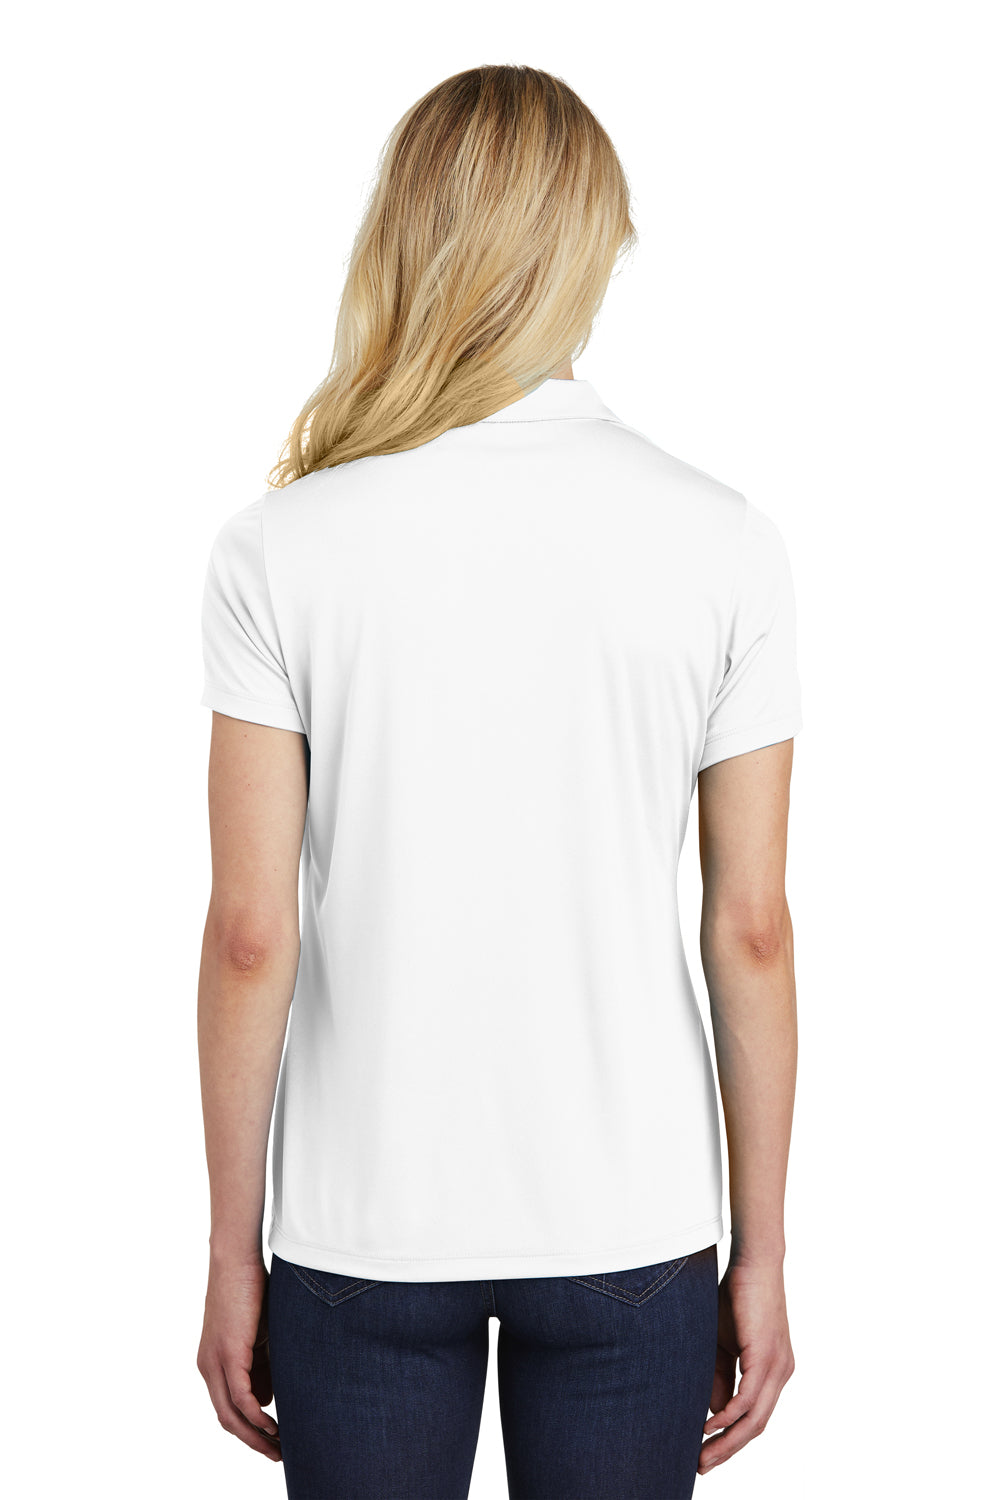 Sport-Tek LST550 Womens Competitor Moisture Wicking Short Sleeve Polo Shirt White Back